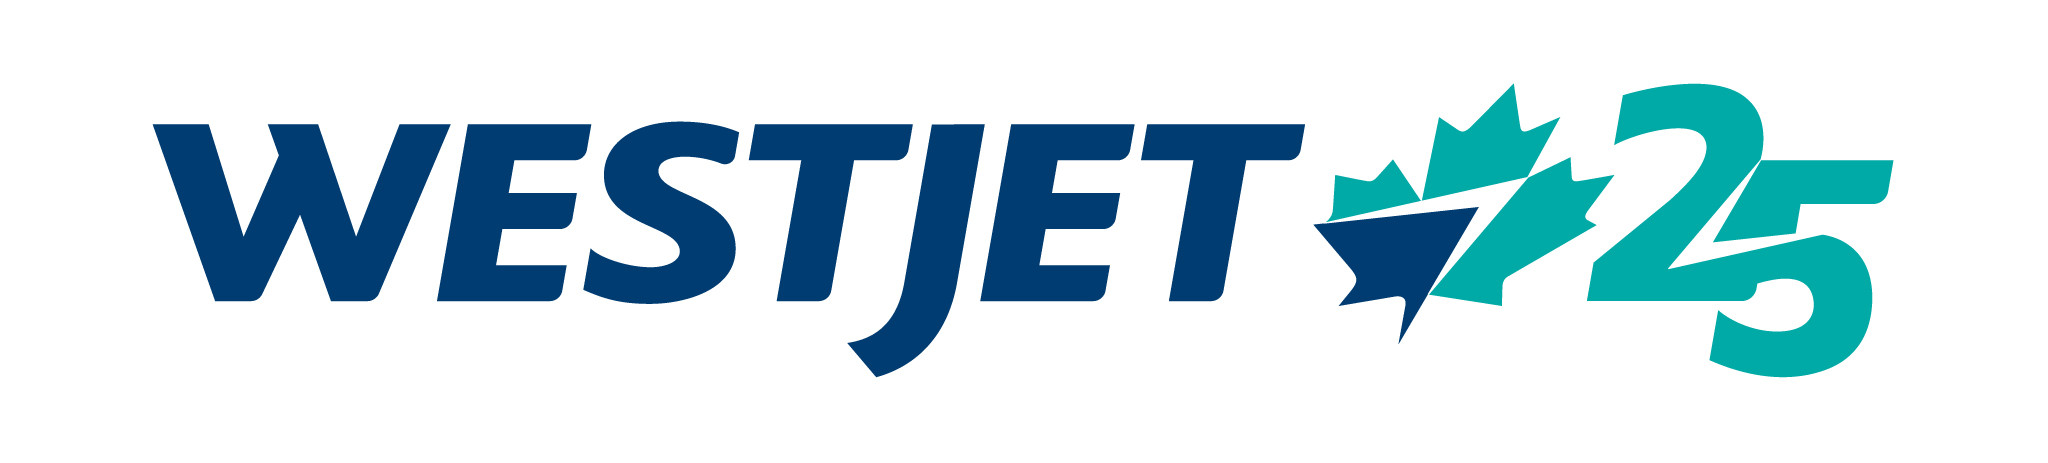 Le groupe d’entreprises WestJet réagit à l’assouplissement des mesures relatives aux voyages et aux frontières au Canada 